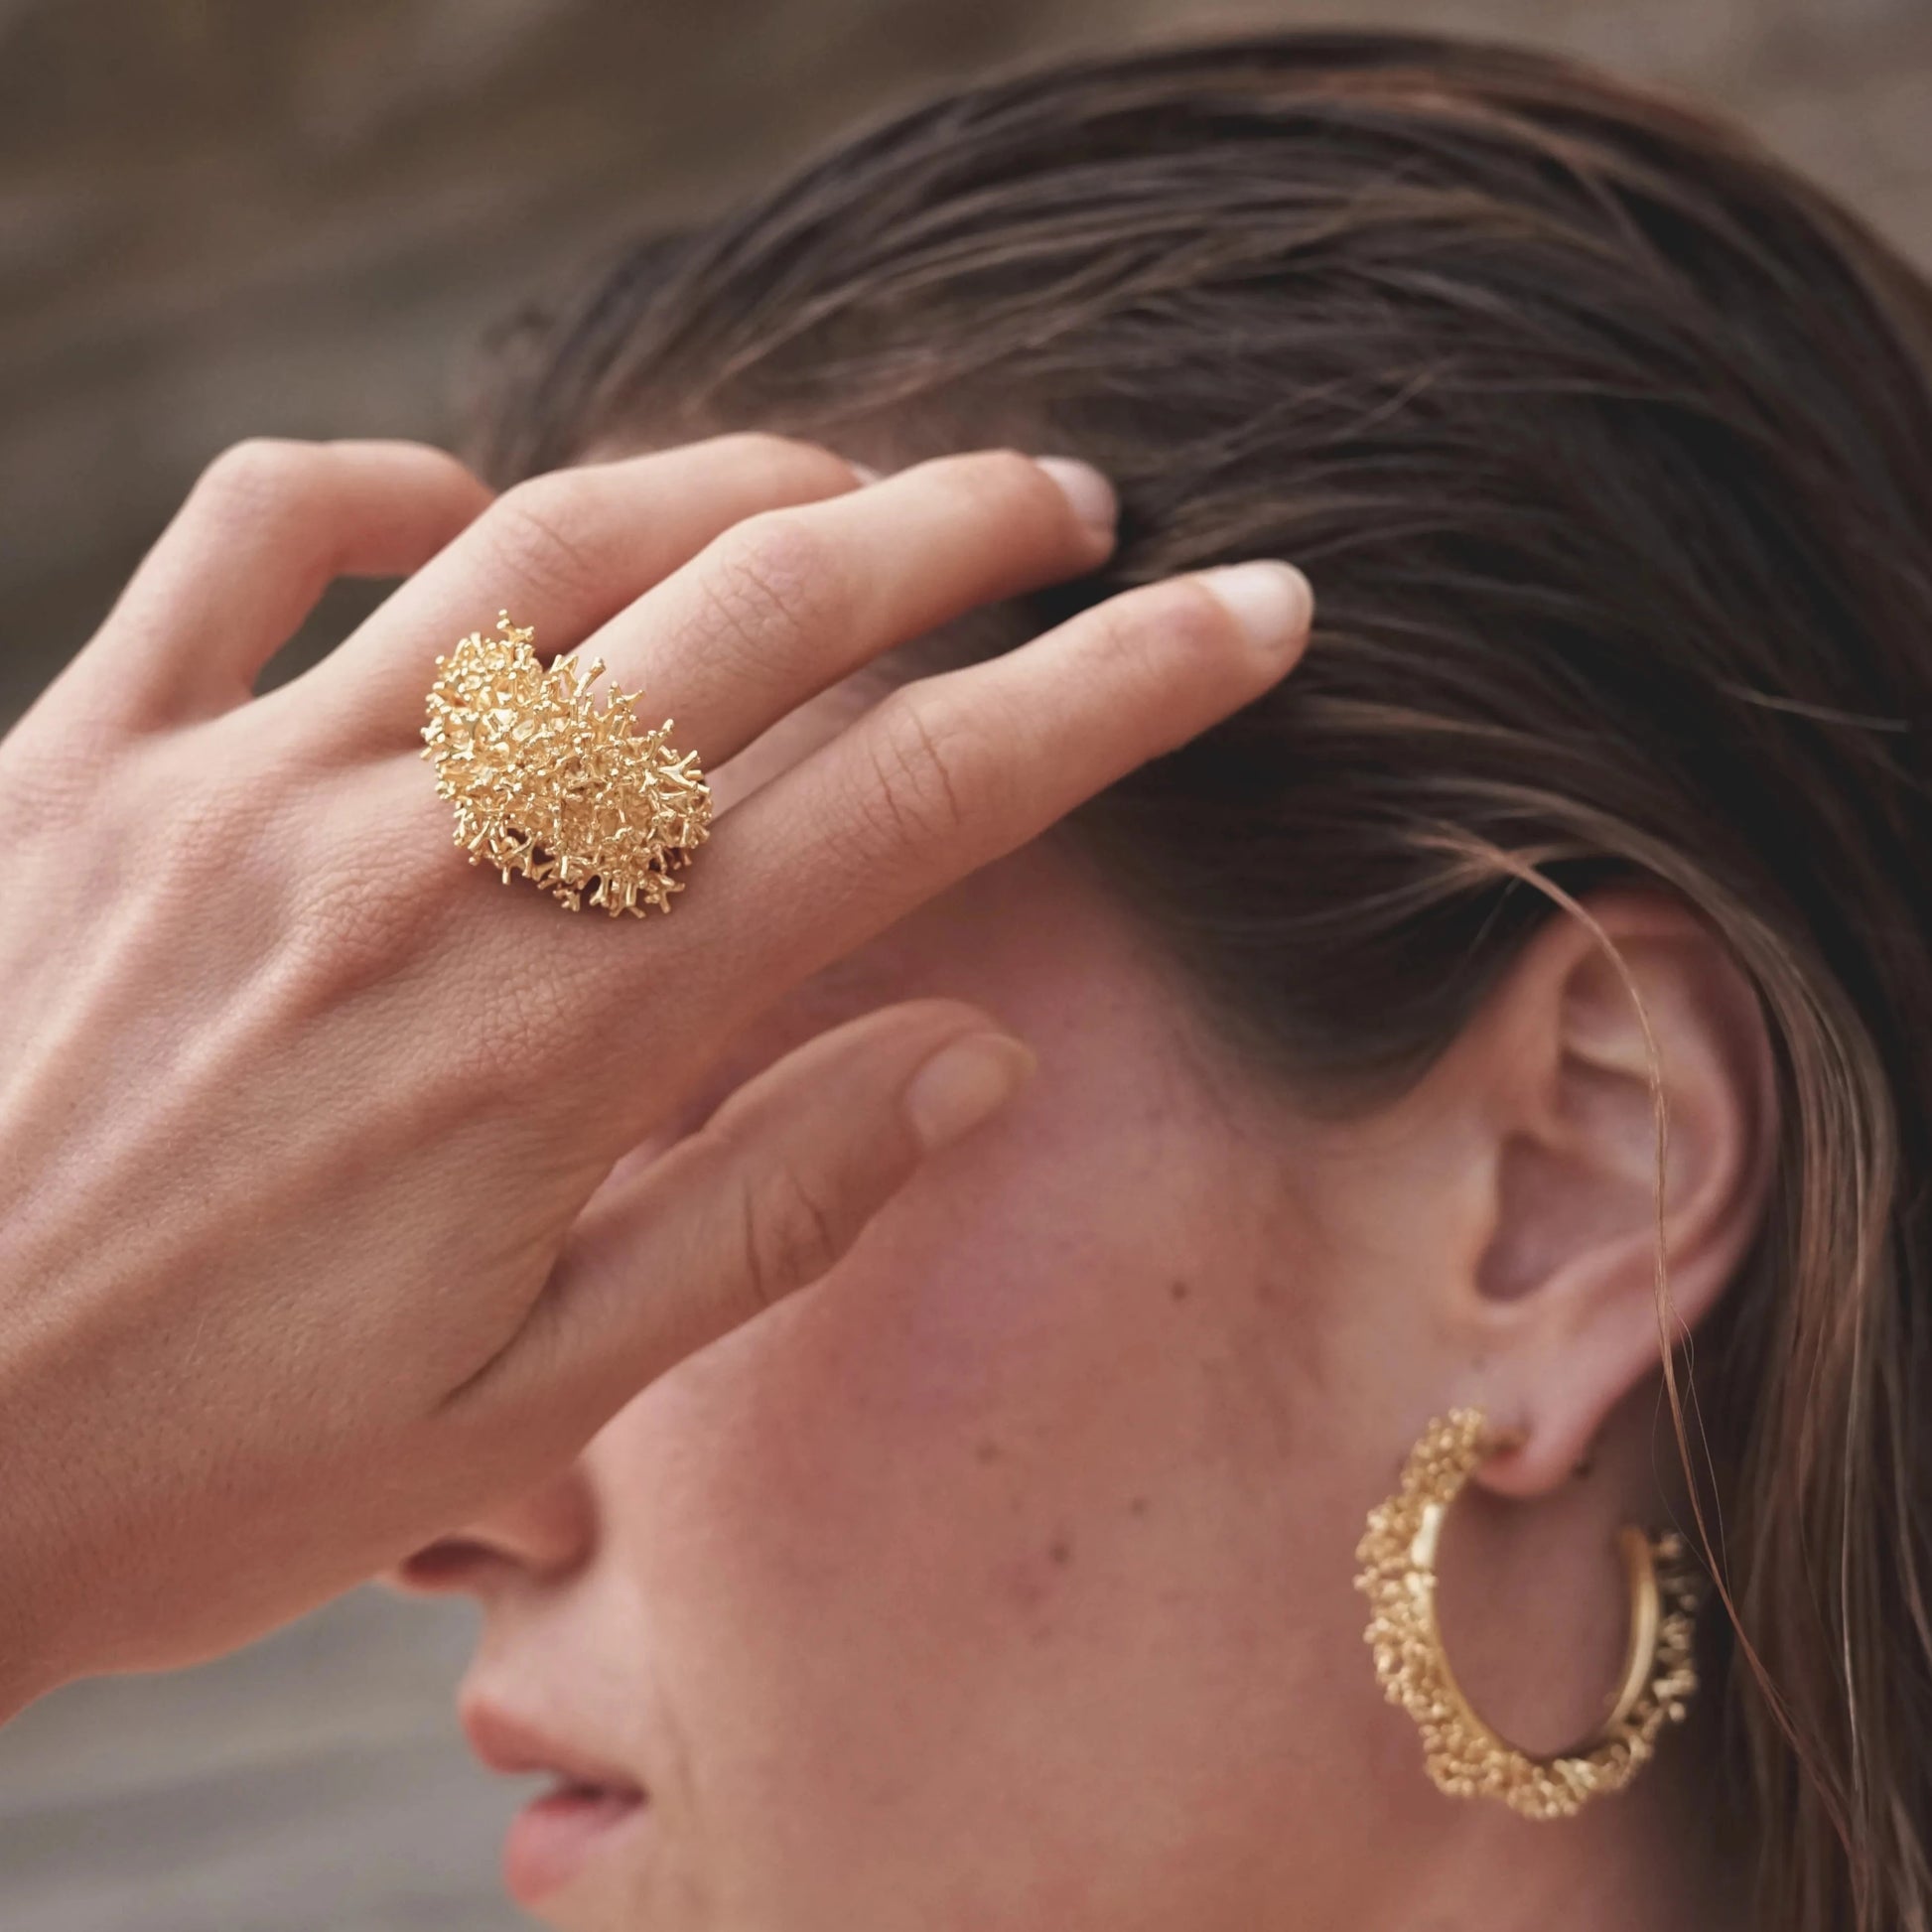 Modelo rozándose el pelo con la mano mientras luce el conjunto de joyas de la colección Coralina en Oro, en detalle el Anillo grande de Coralina bañado en Oro.